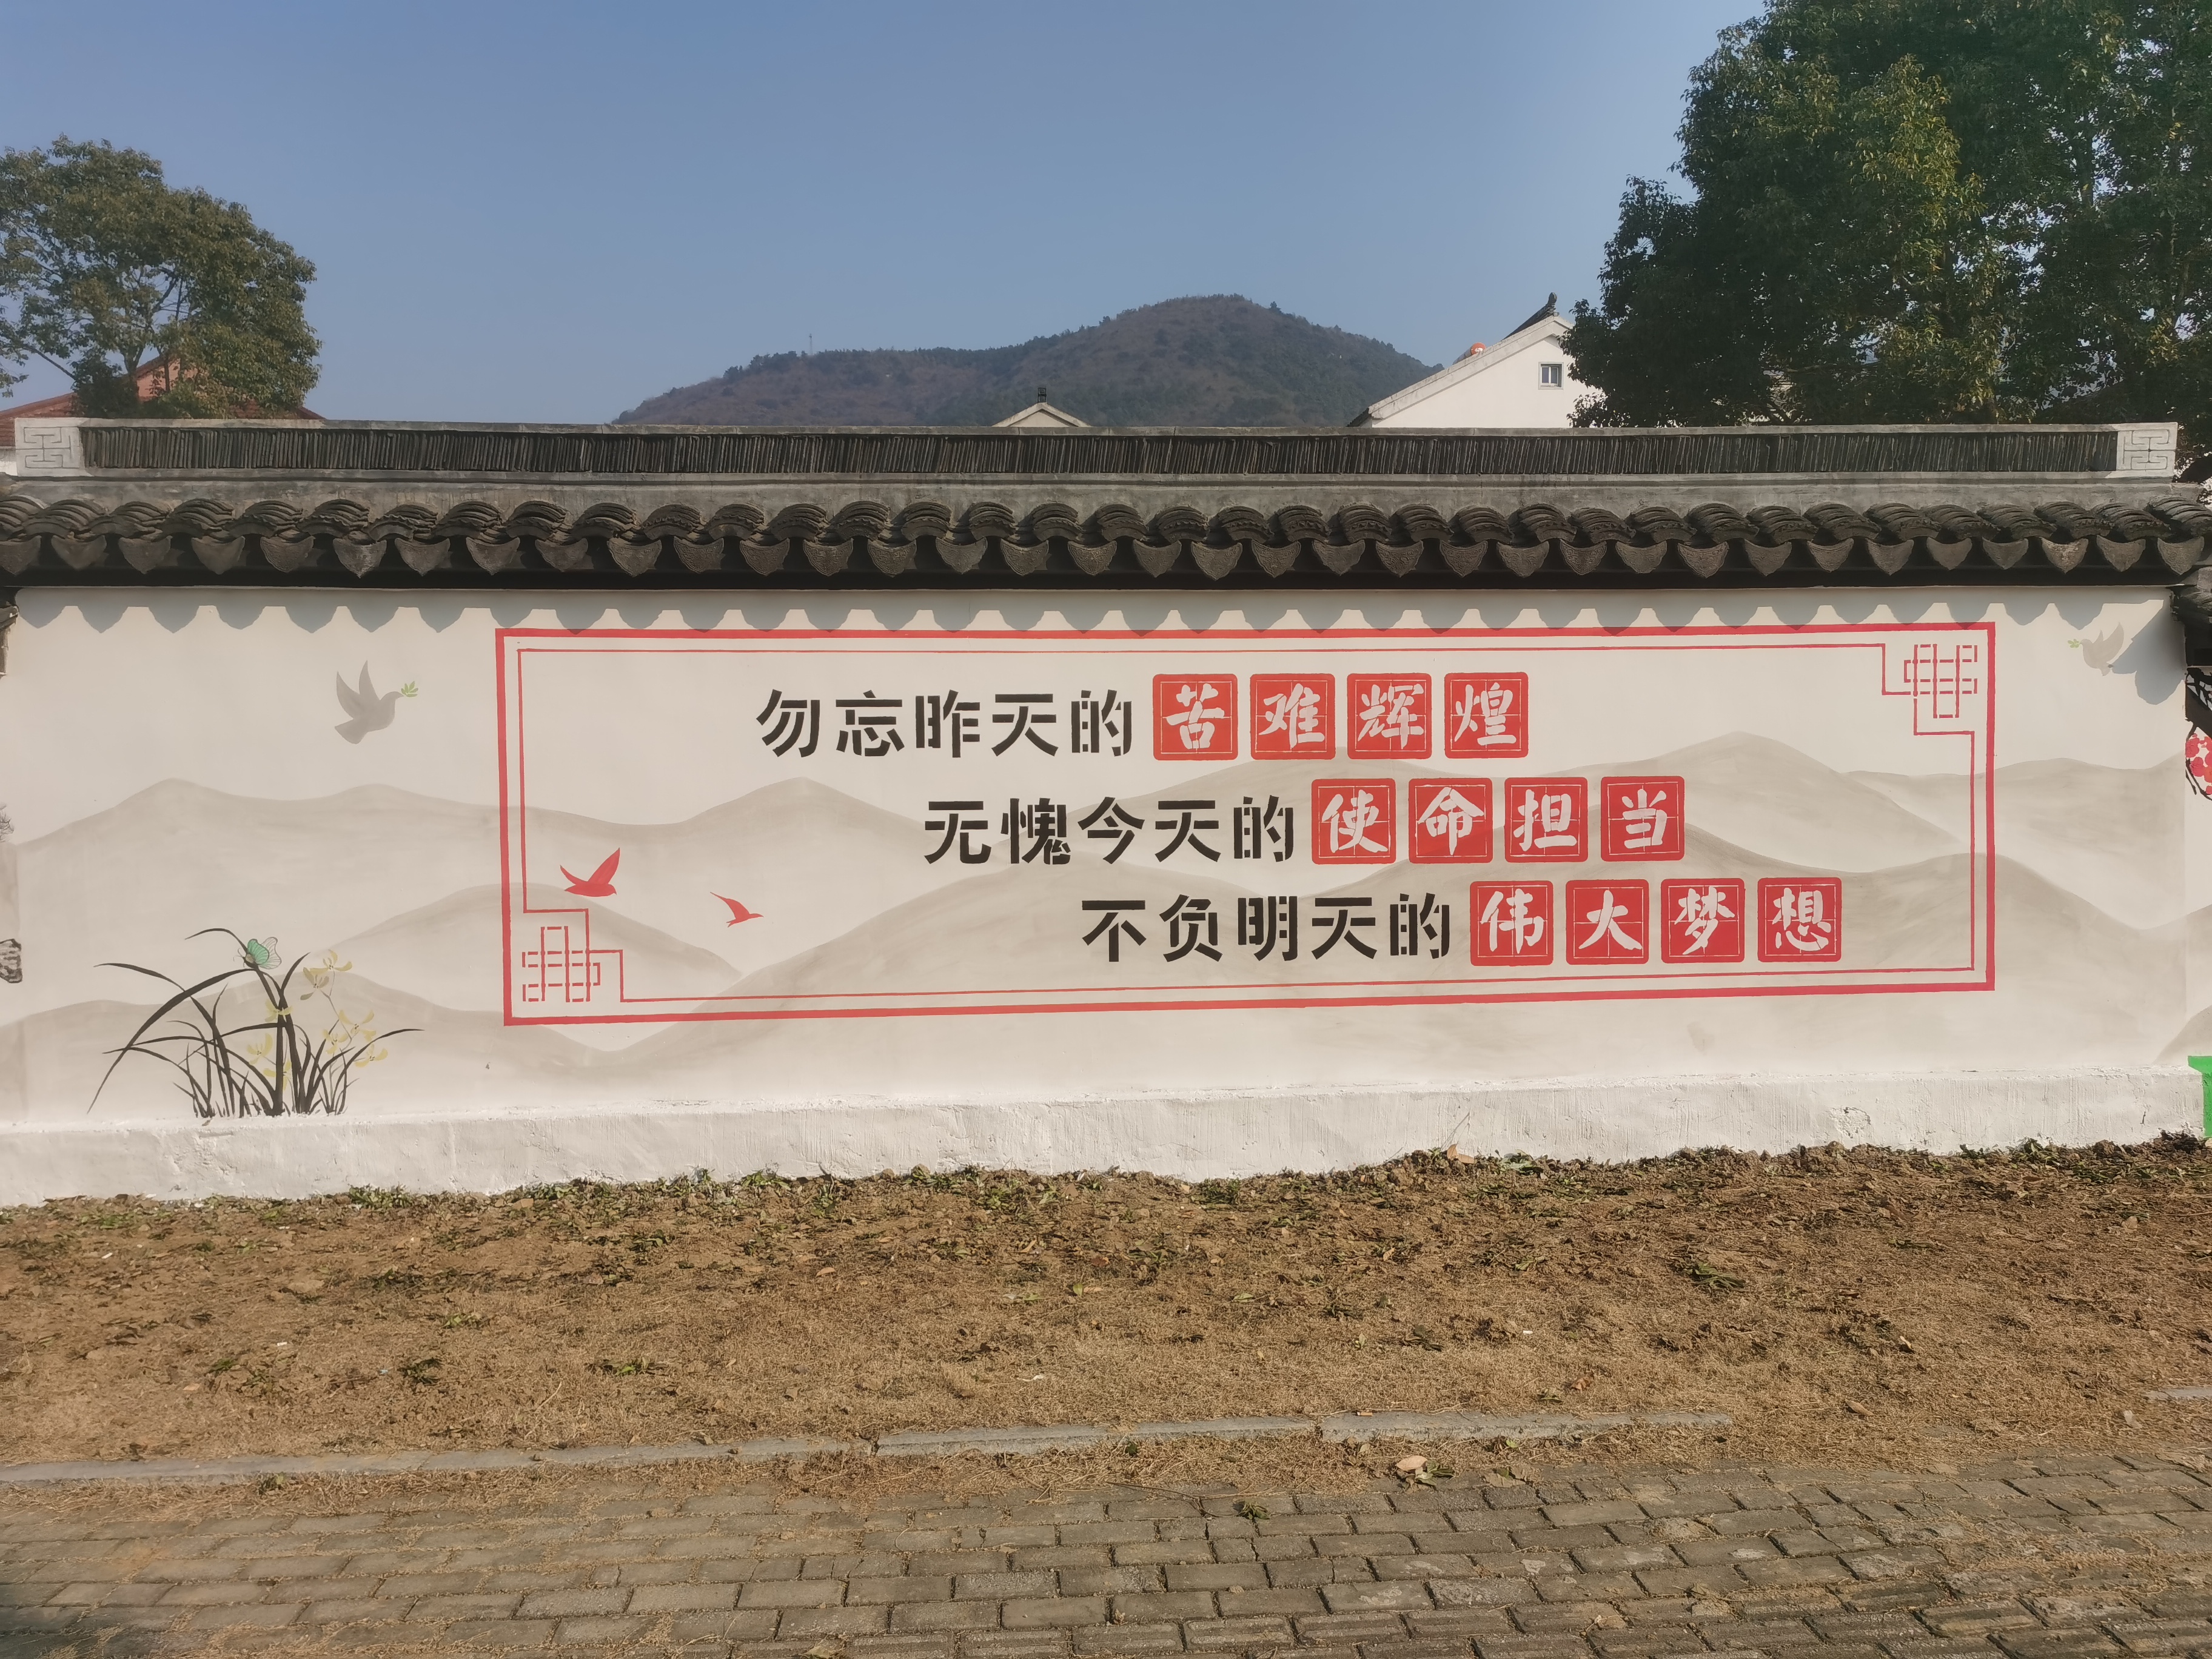 梅园村文化墙彩绘,弘扬社会主义价值观